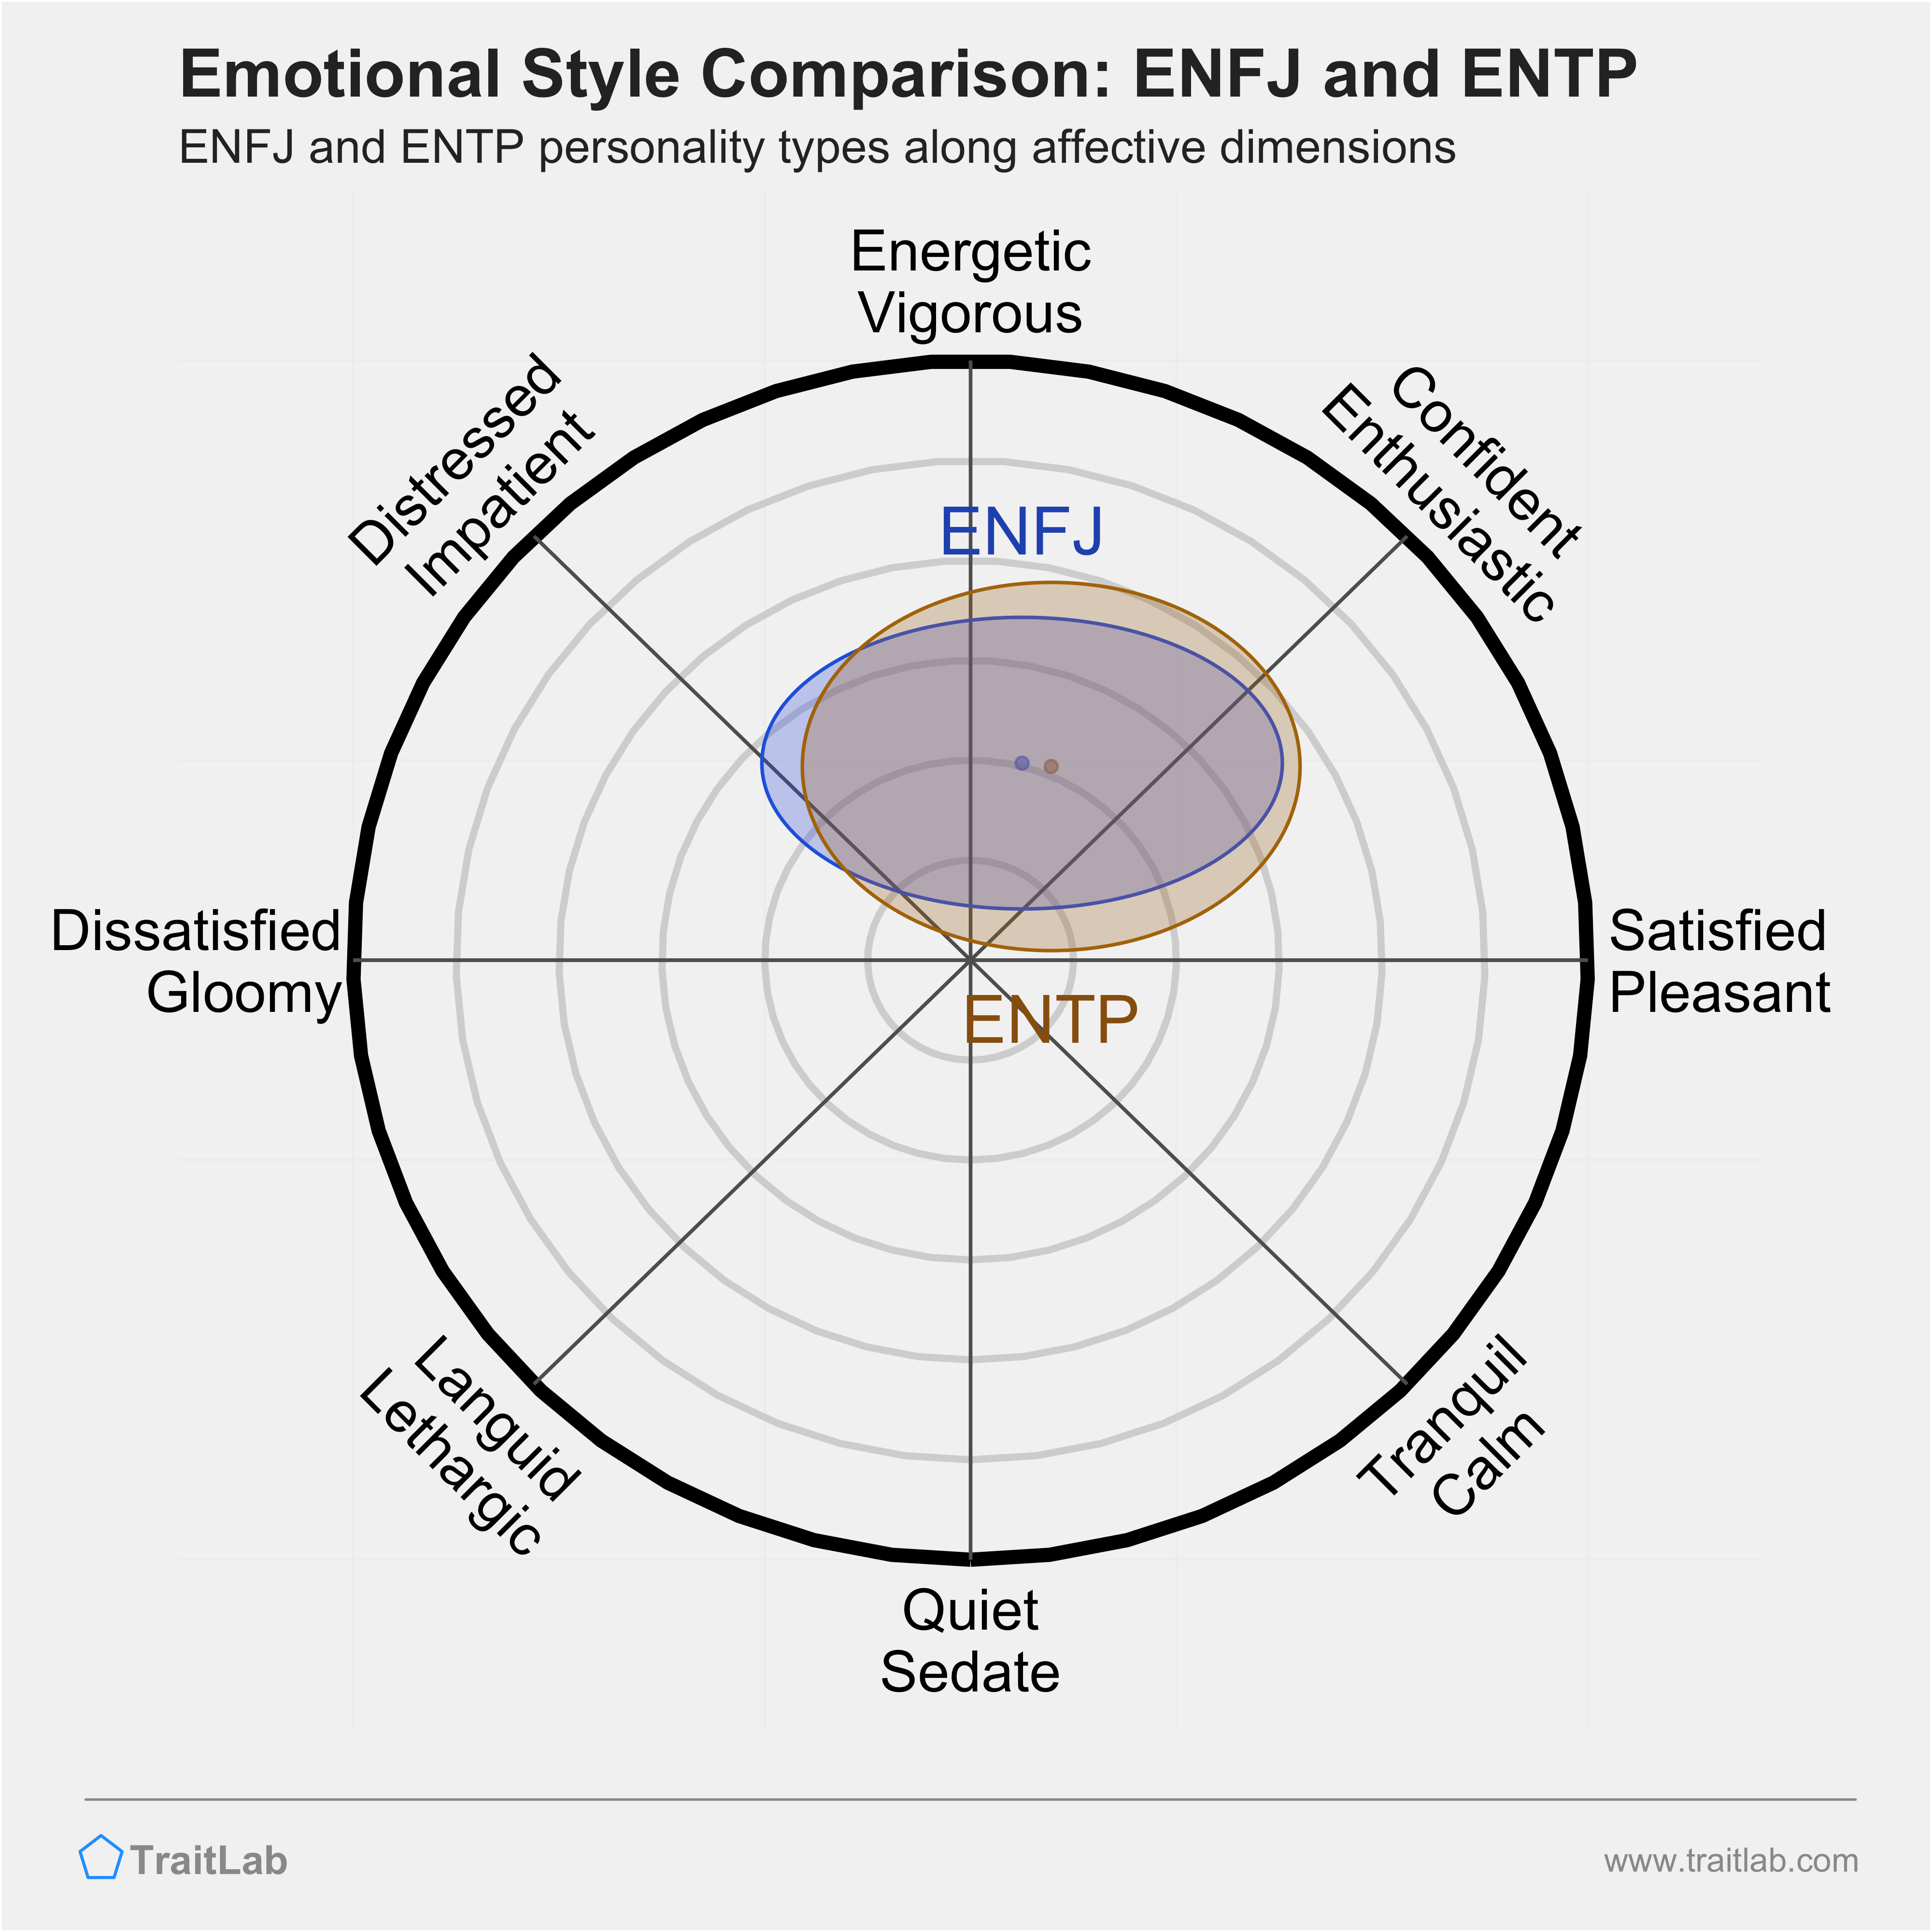 ENFJ and ENTP comparison across emotional (affective) dimensions